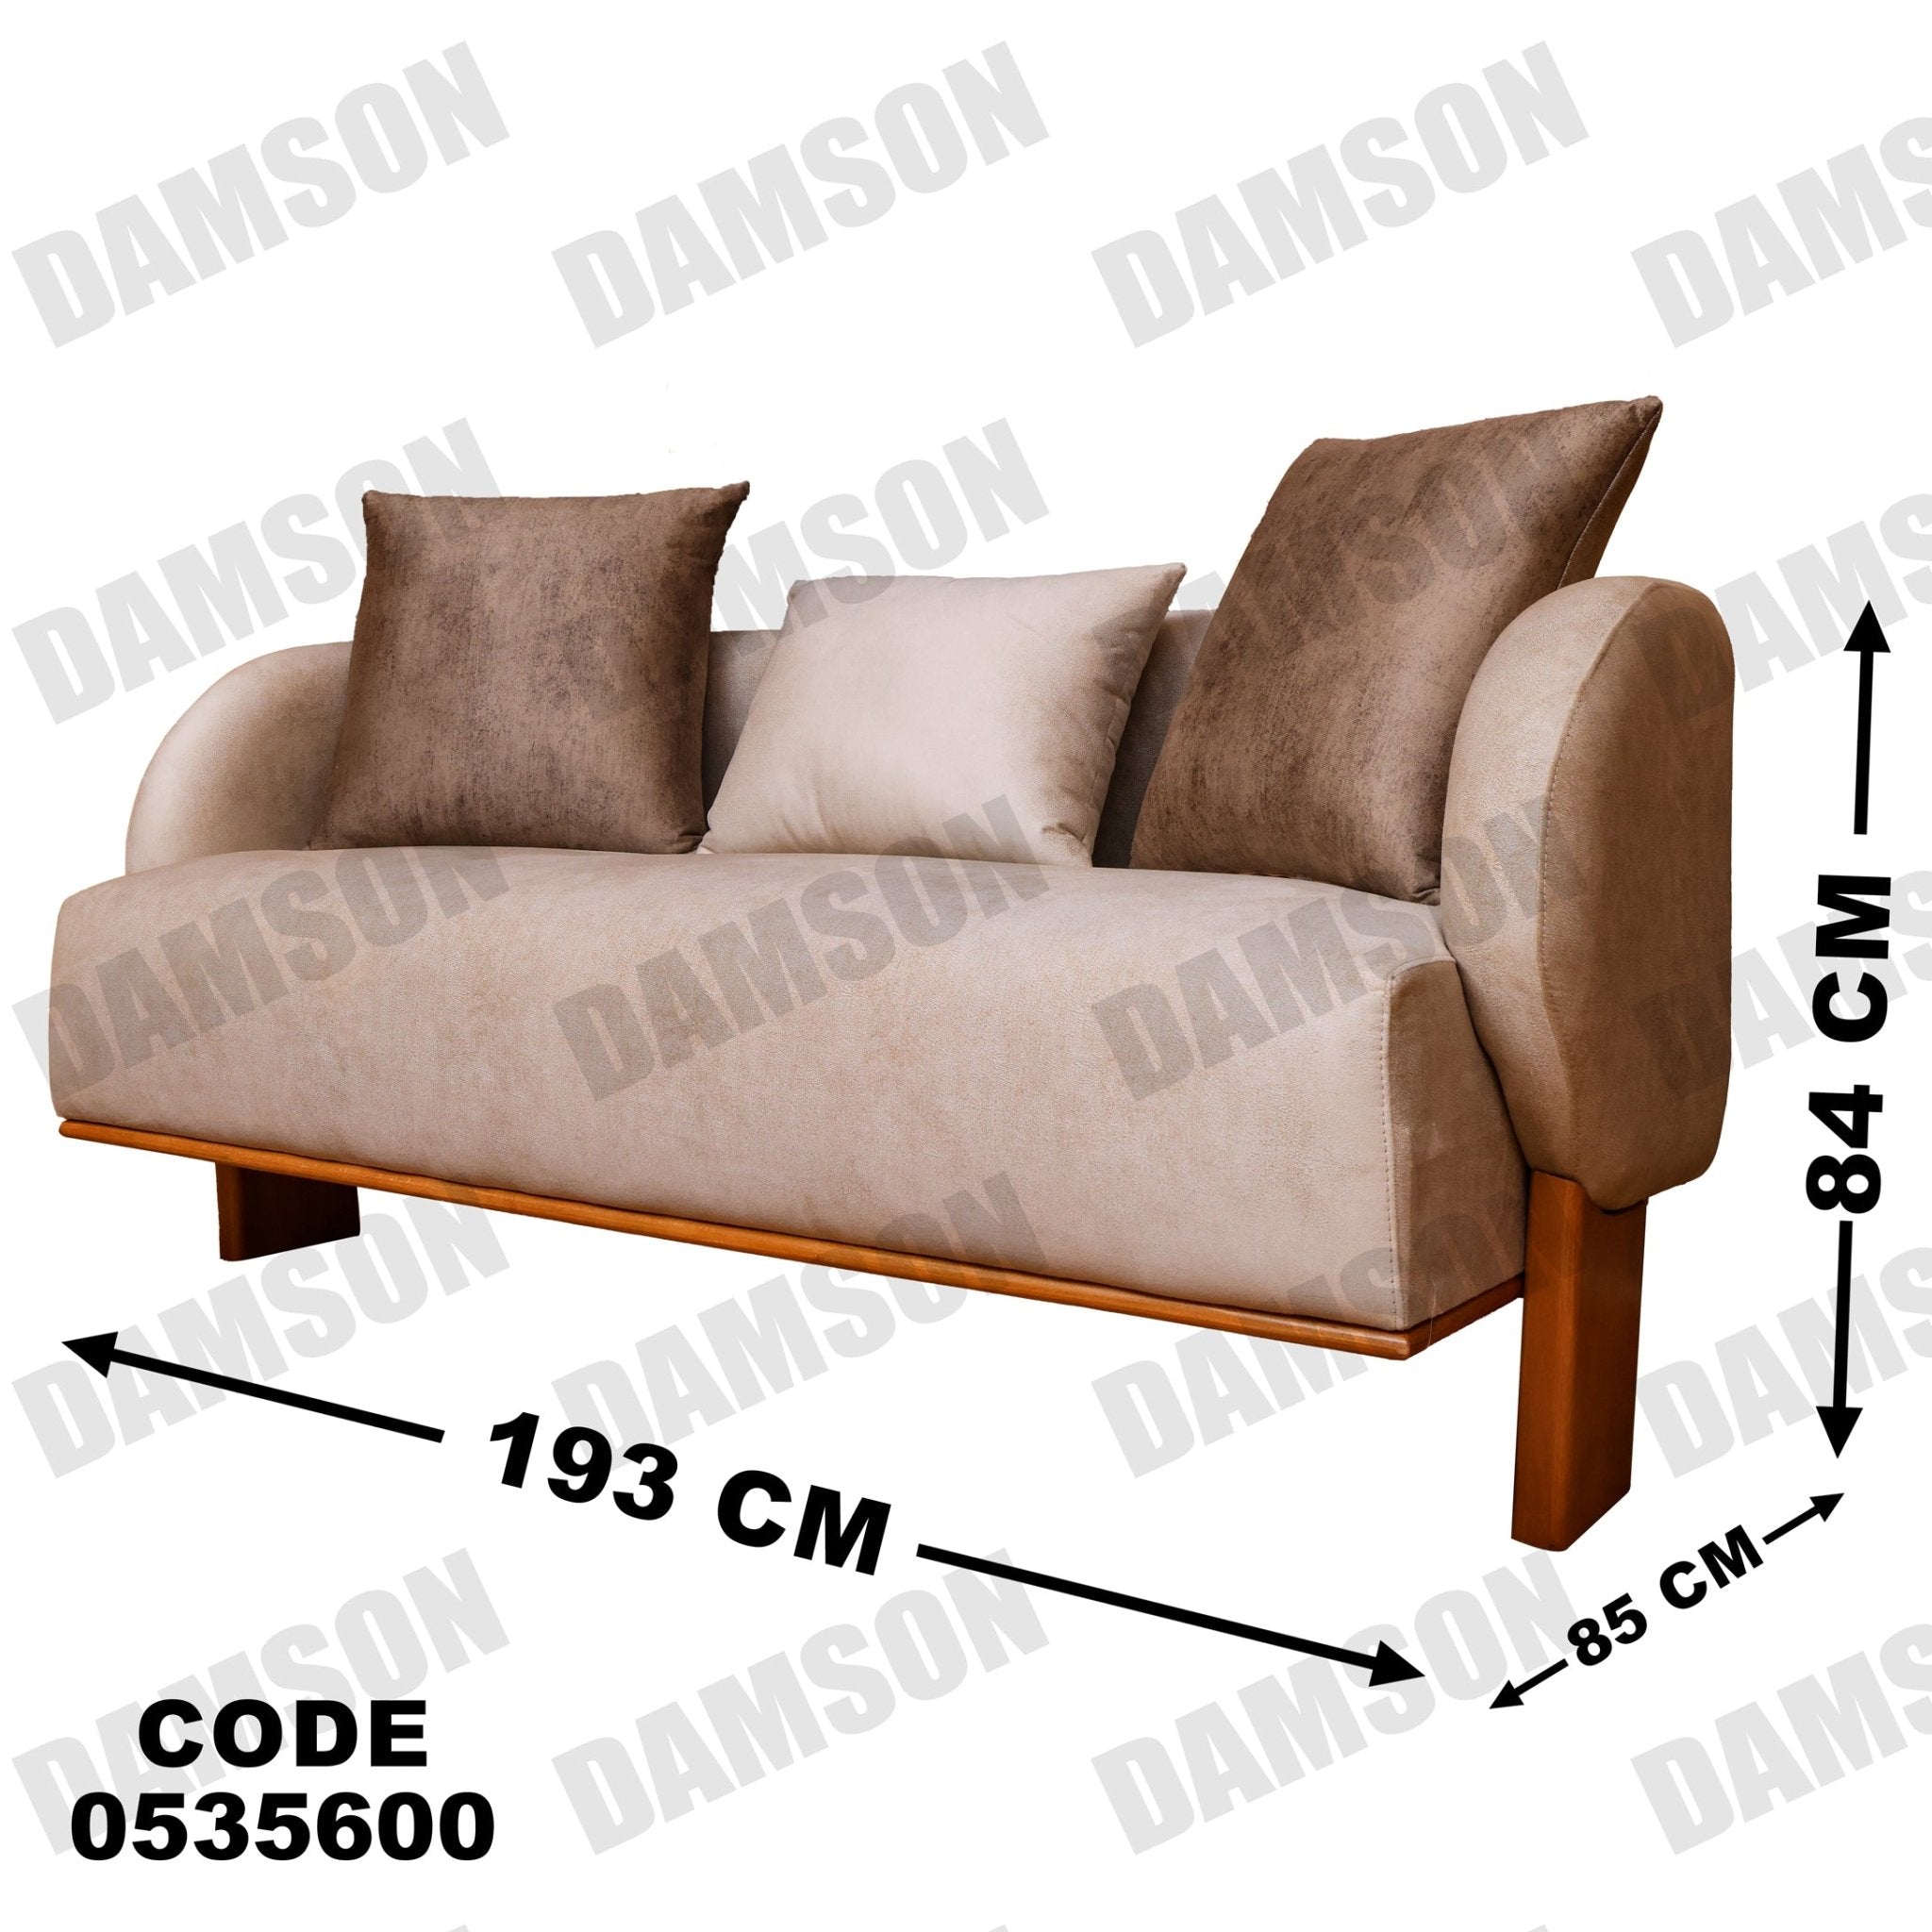 انترية 356 - Damson Furnitureانترية 356